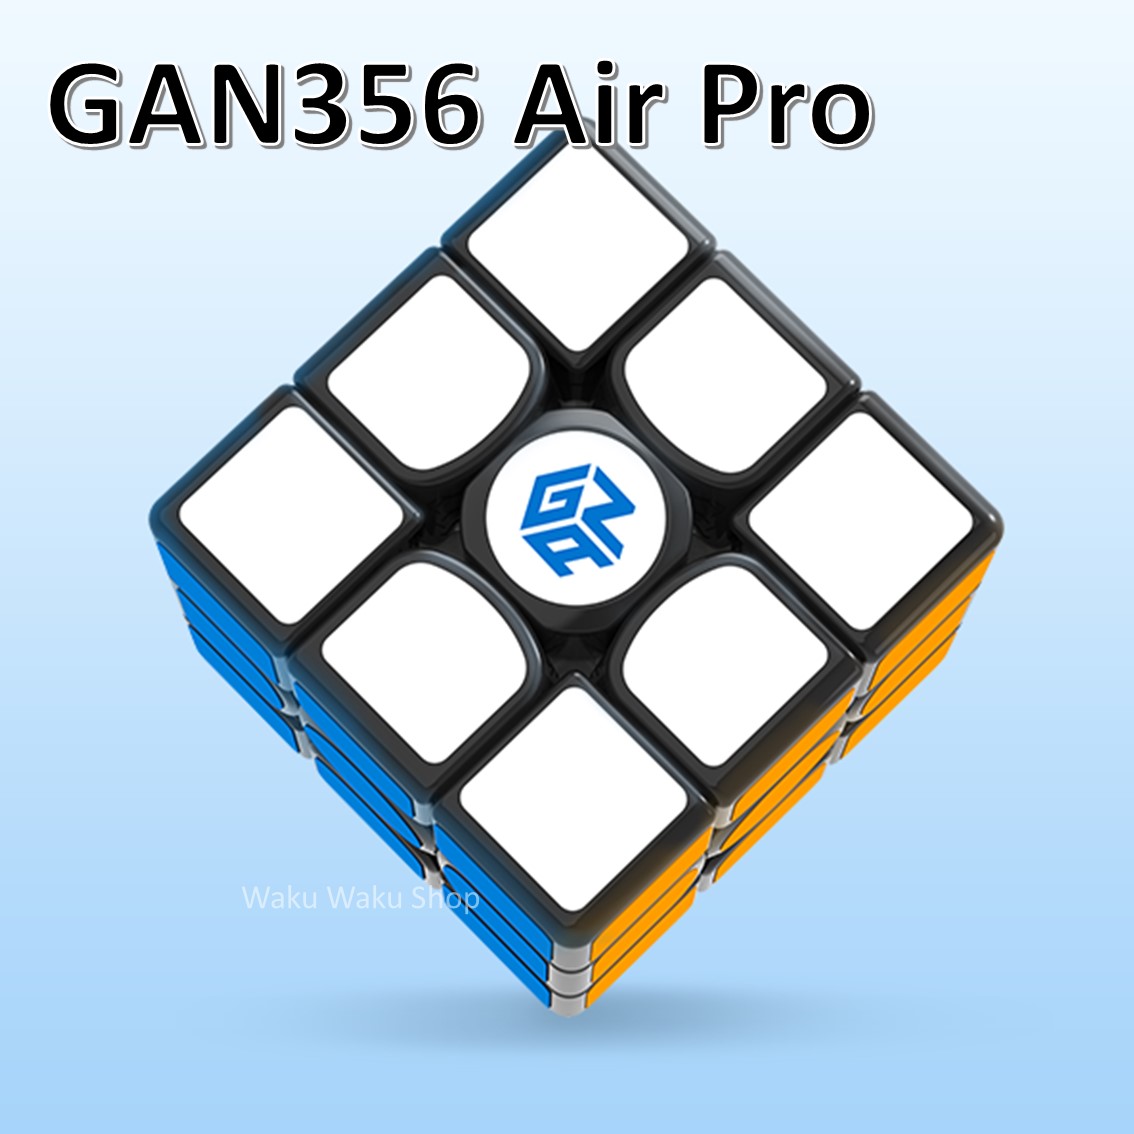 安心の保証付き 本物 正規輸入品 Gancube GAN356 Air Pro 3x3x3キューブ なめらか おすすめ ルービックキューブ 競技向け 新商品